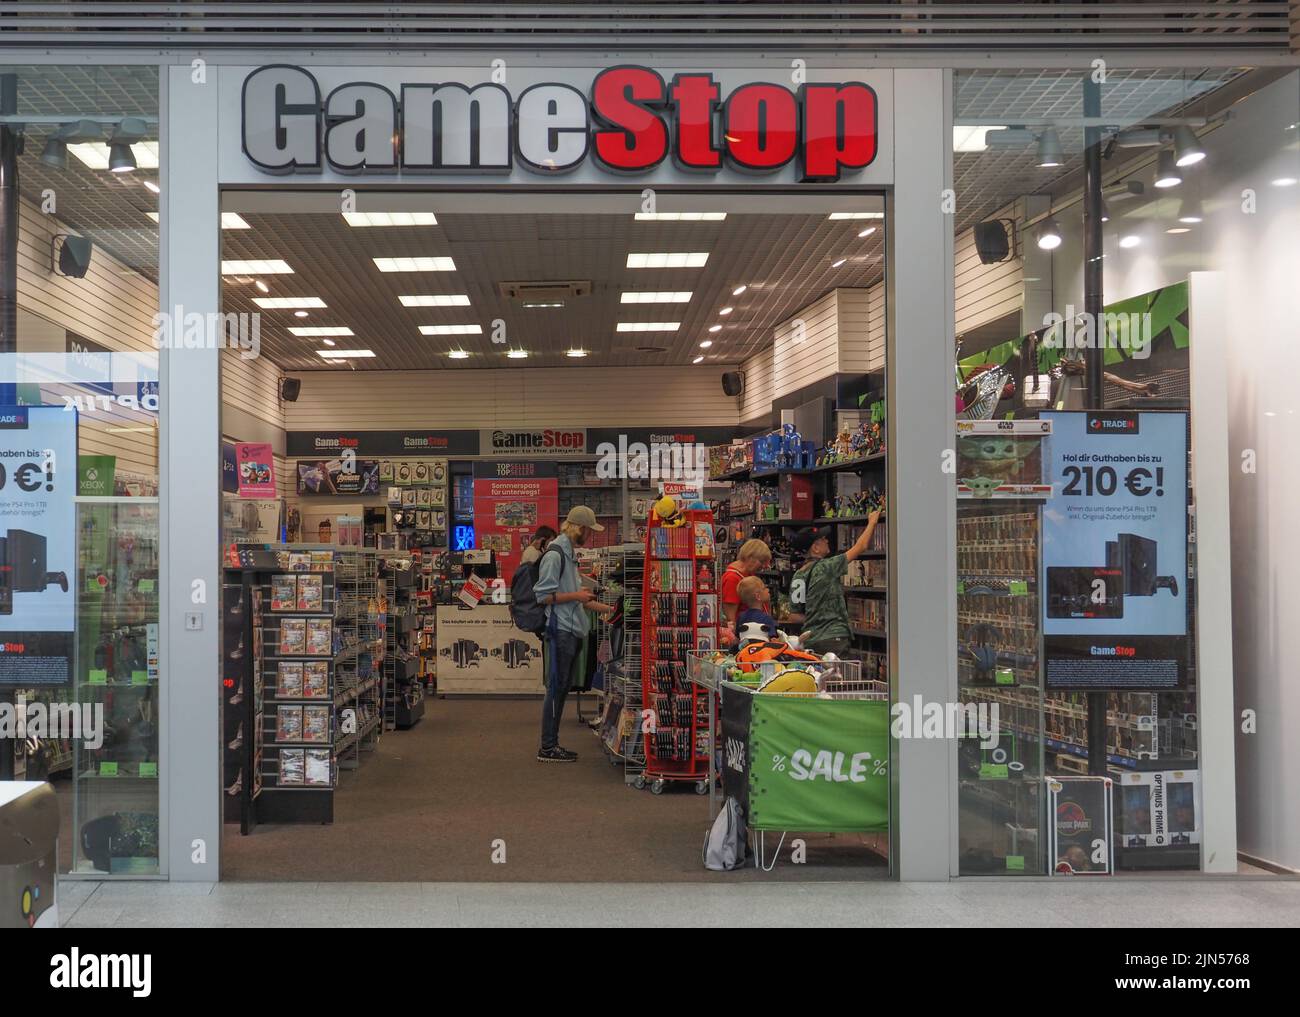 Dolphin Mall - GameStop, Store in MIAMI, FL